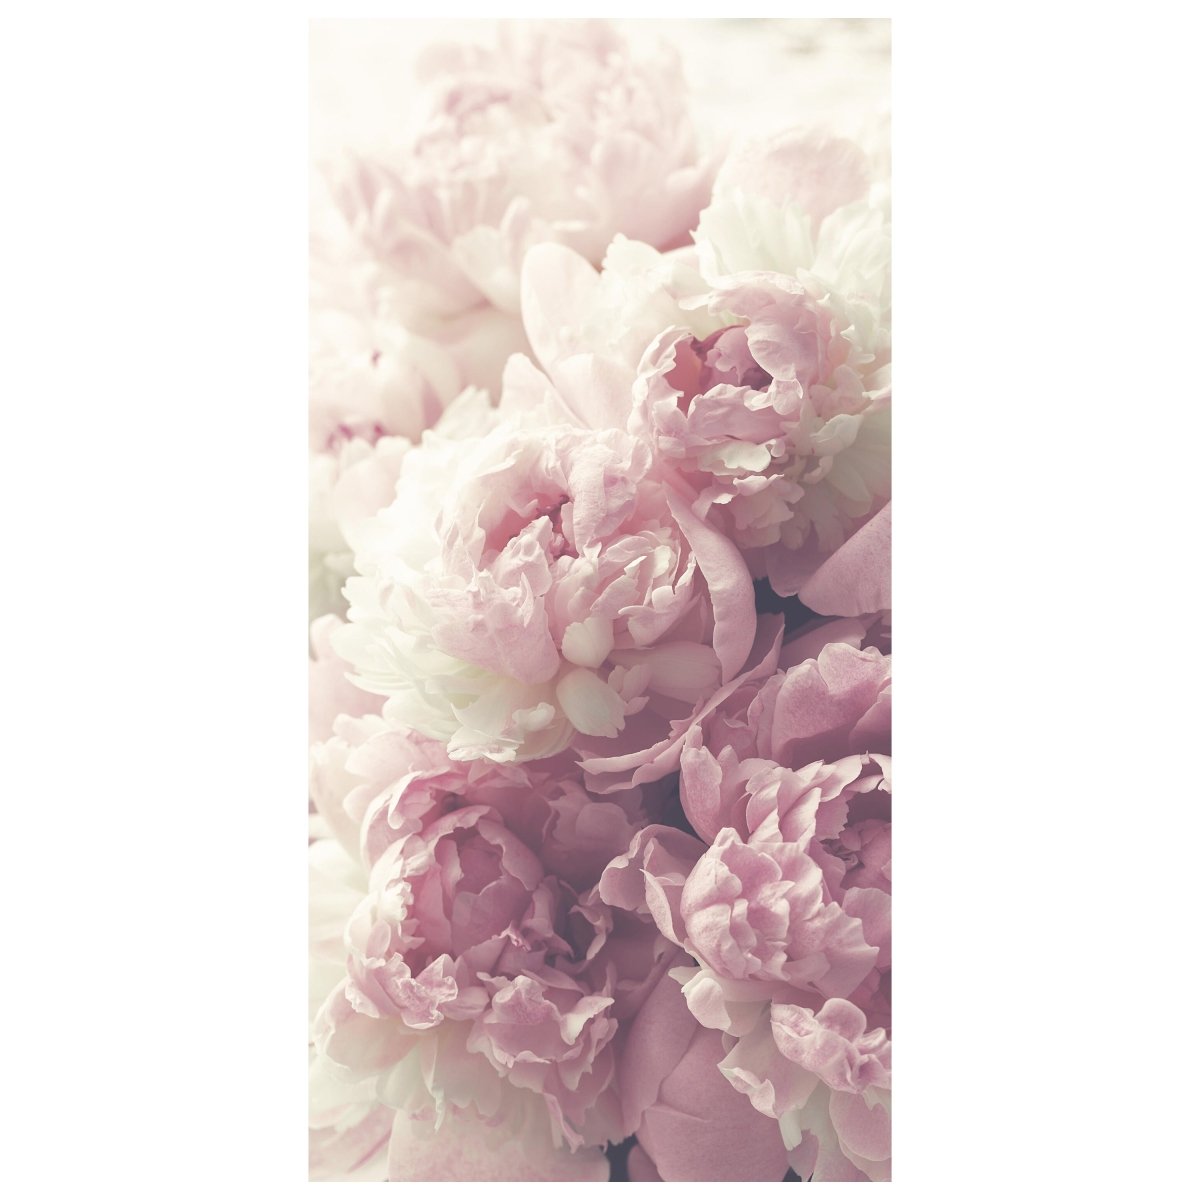 Türtapete Duftrosen Rosa Weiß, Rose, Blumen M1225 - Bild 2